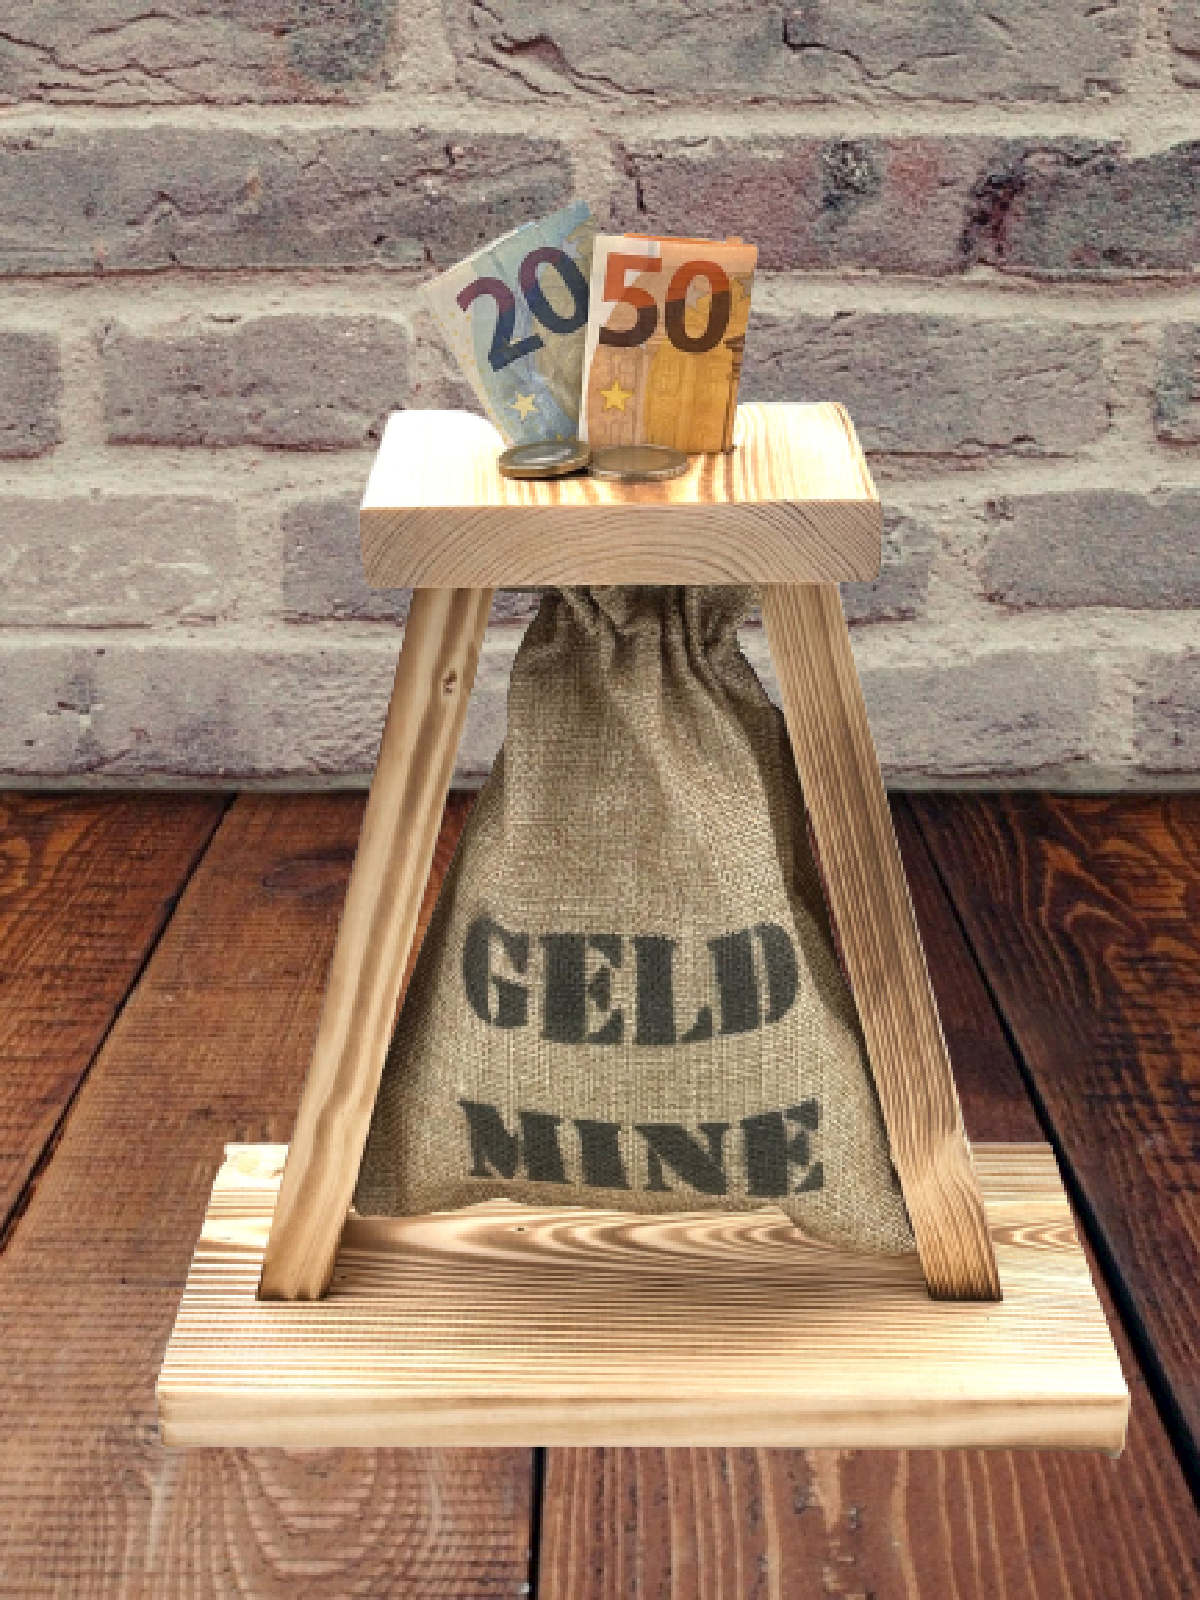 Eiserne Reserve Geld-Mine Spardose Geschenk - lustiges Geldgeschenk handgemacht aus Holz